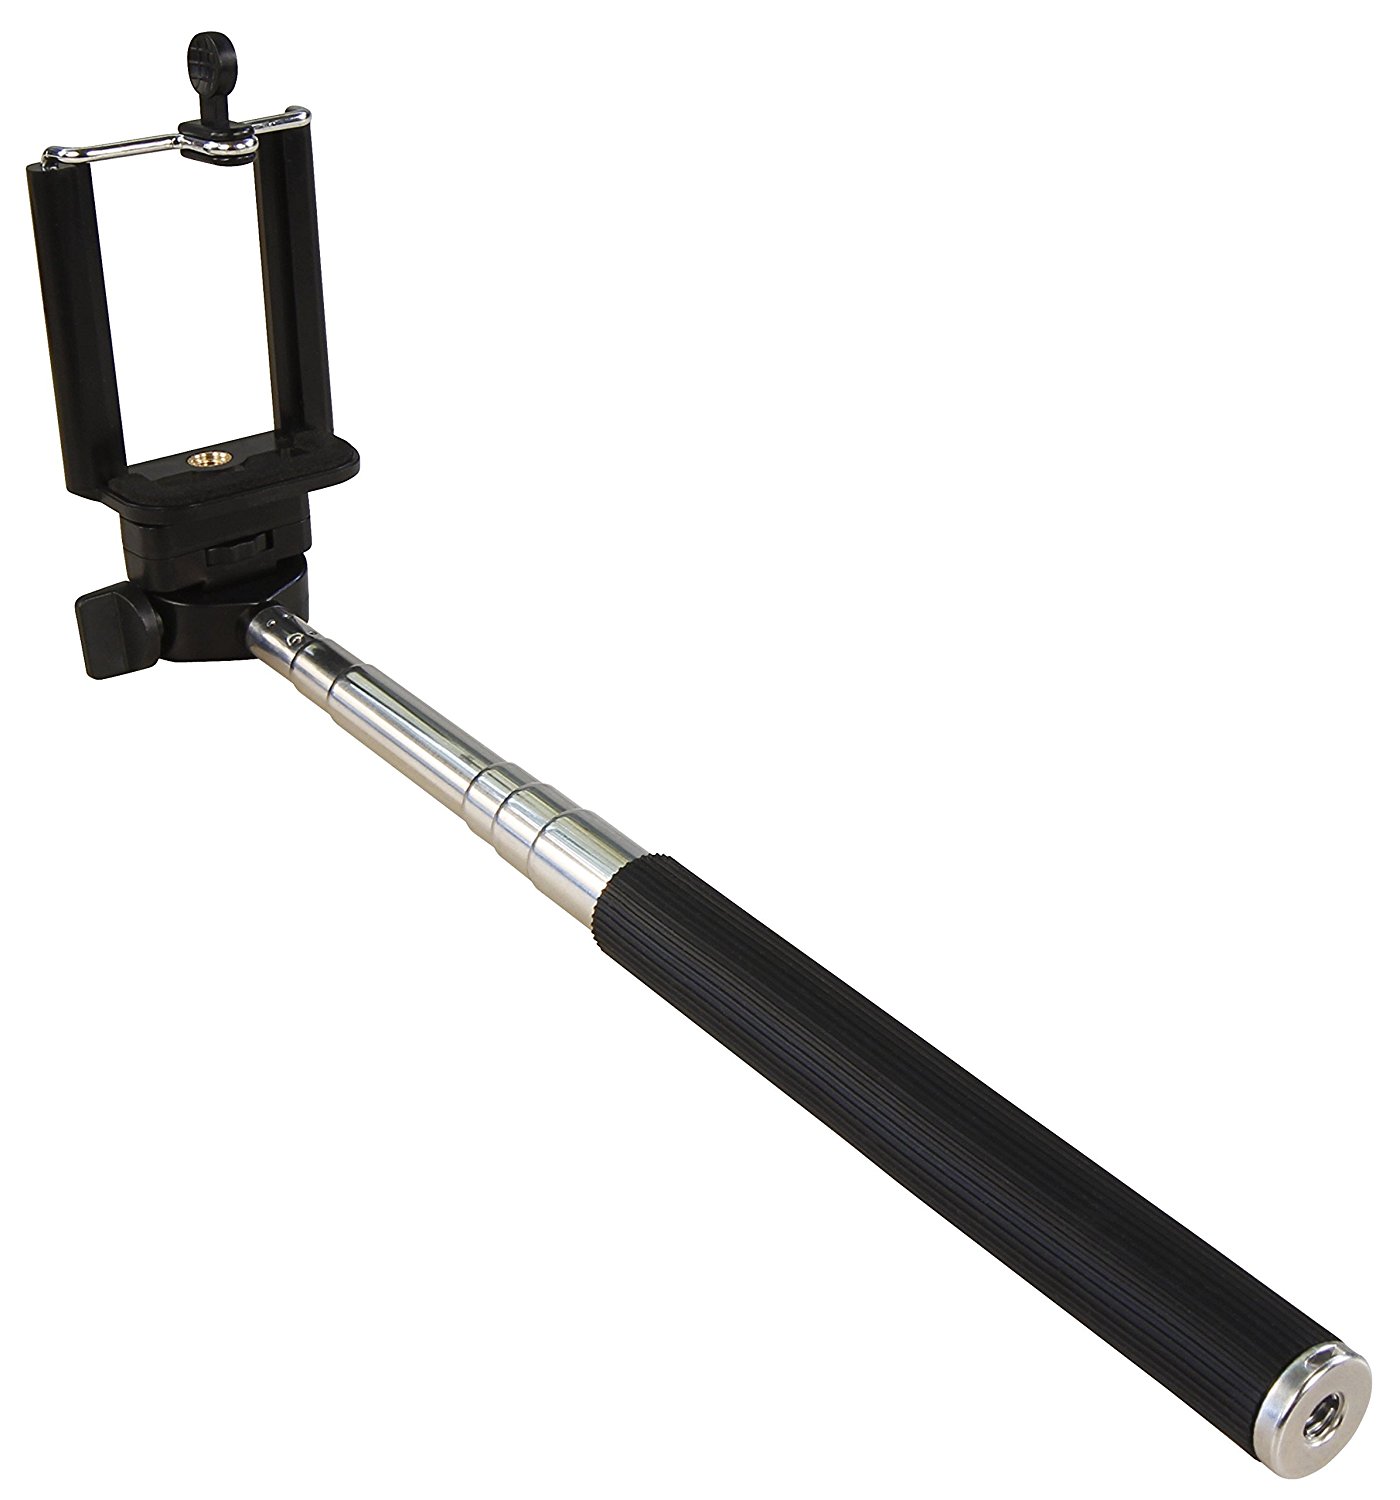 Asta Telescopica per Fare Selfie con Telecomando Bluetooth Fotografia Autoscatto.